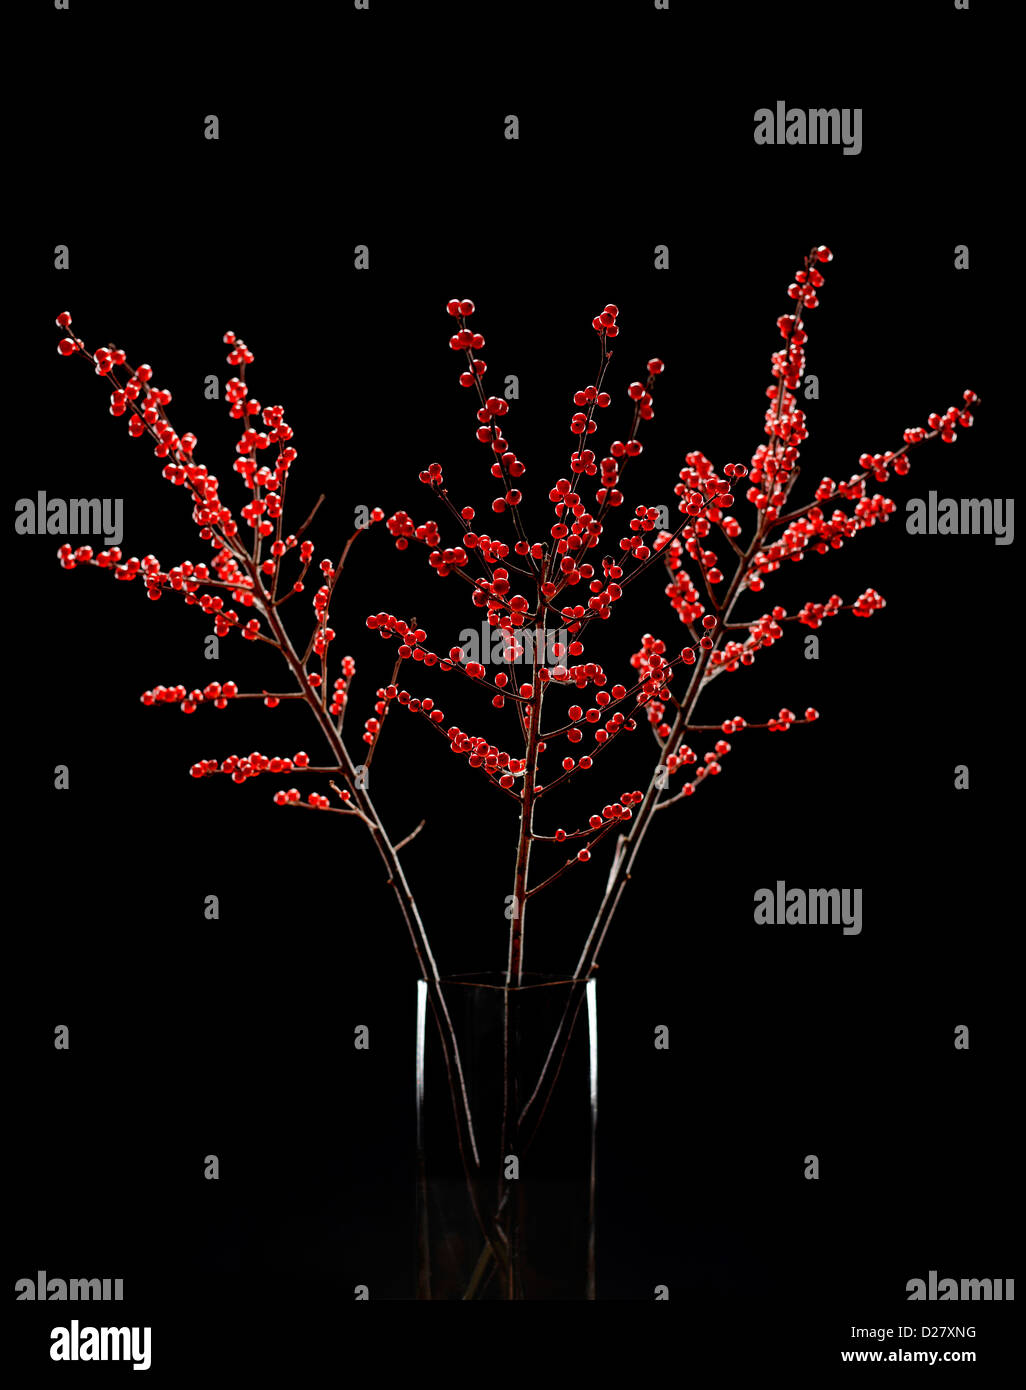 La disposition des baies d'hiver rouge Vase en verre sur fond noir Banque D'Images